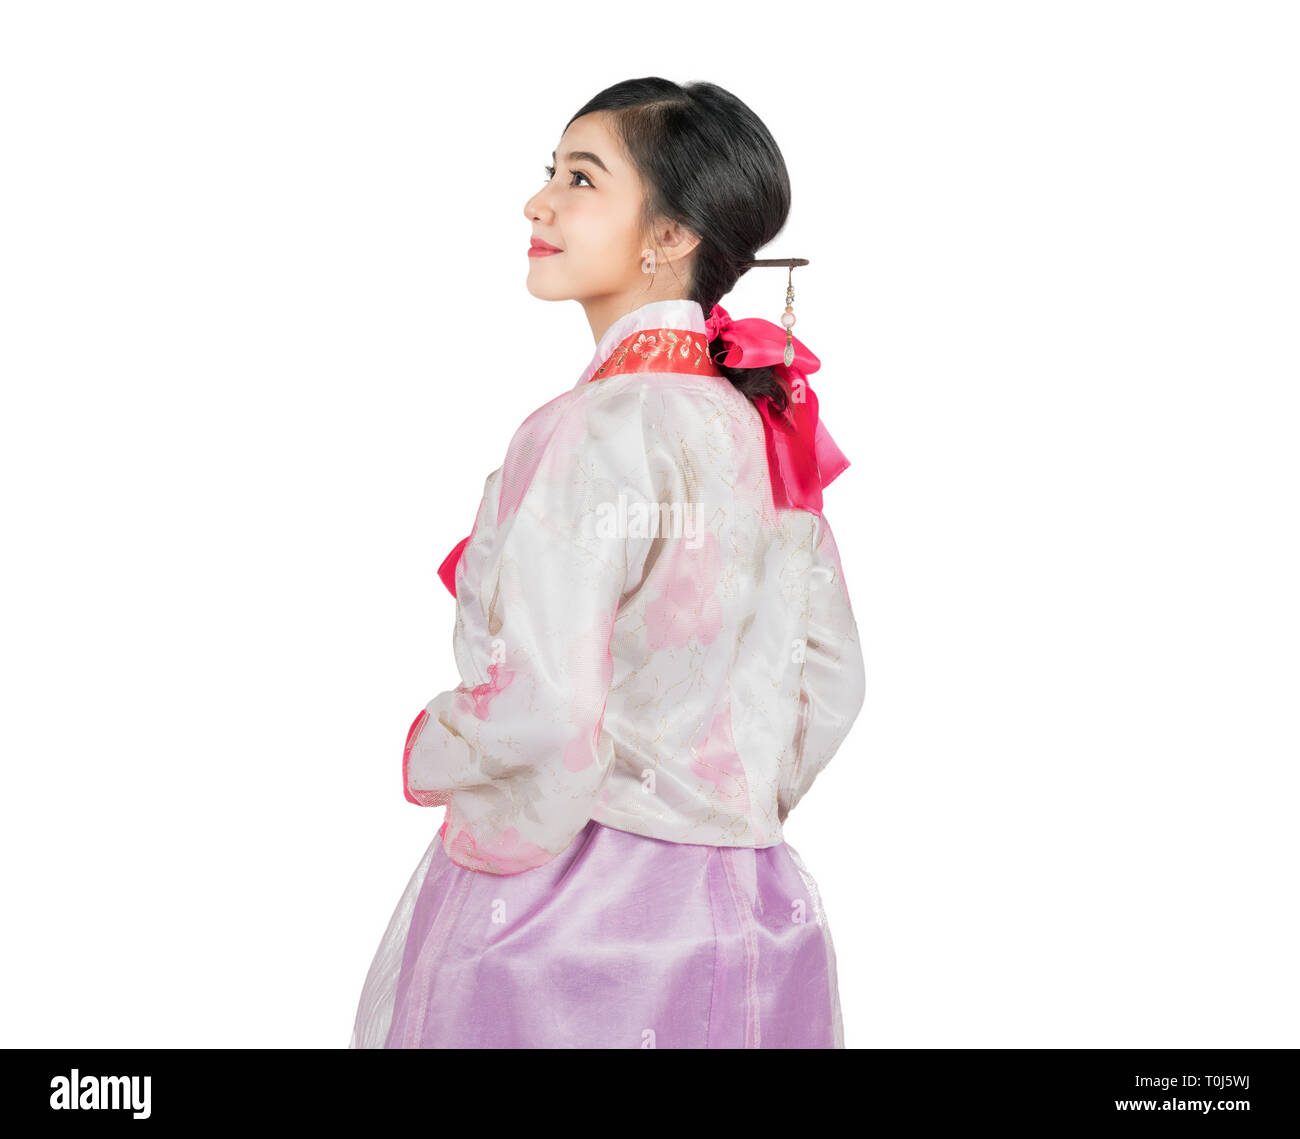 Koreanische Frau mit Hanbok, die traditionelle koreanische Kleid in weißen Hintergrund mit Freistellungspfaden. Stockfoto